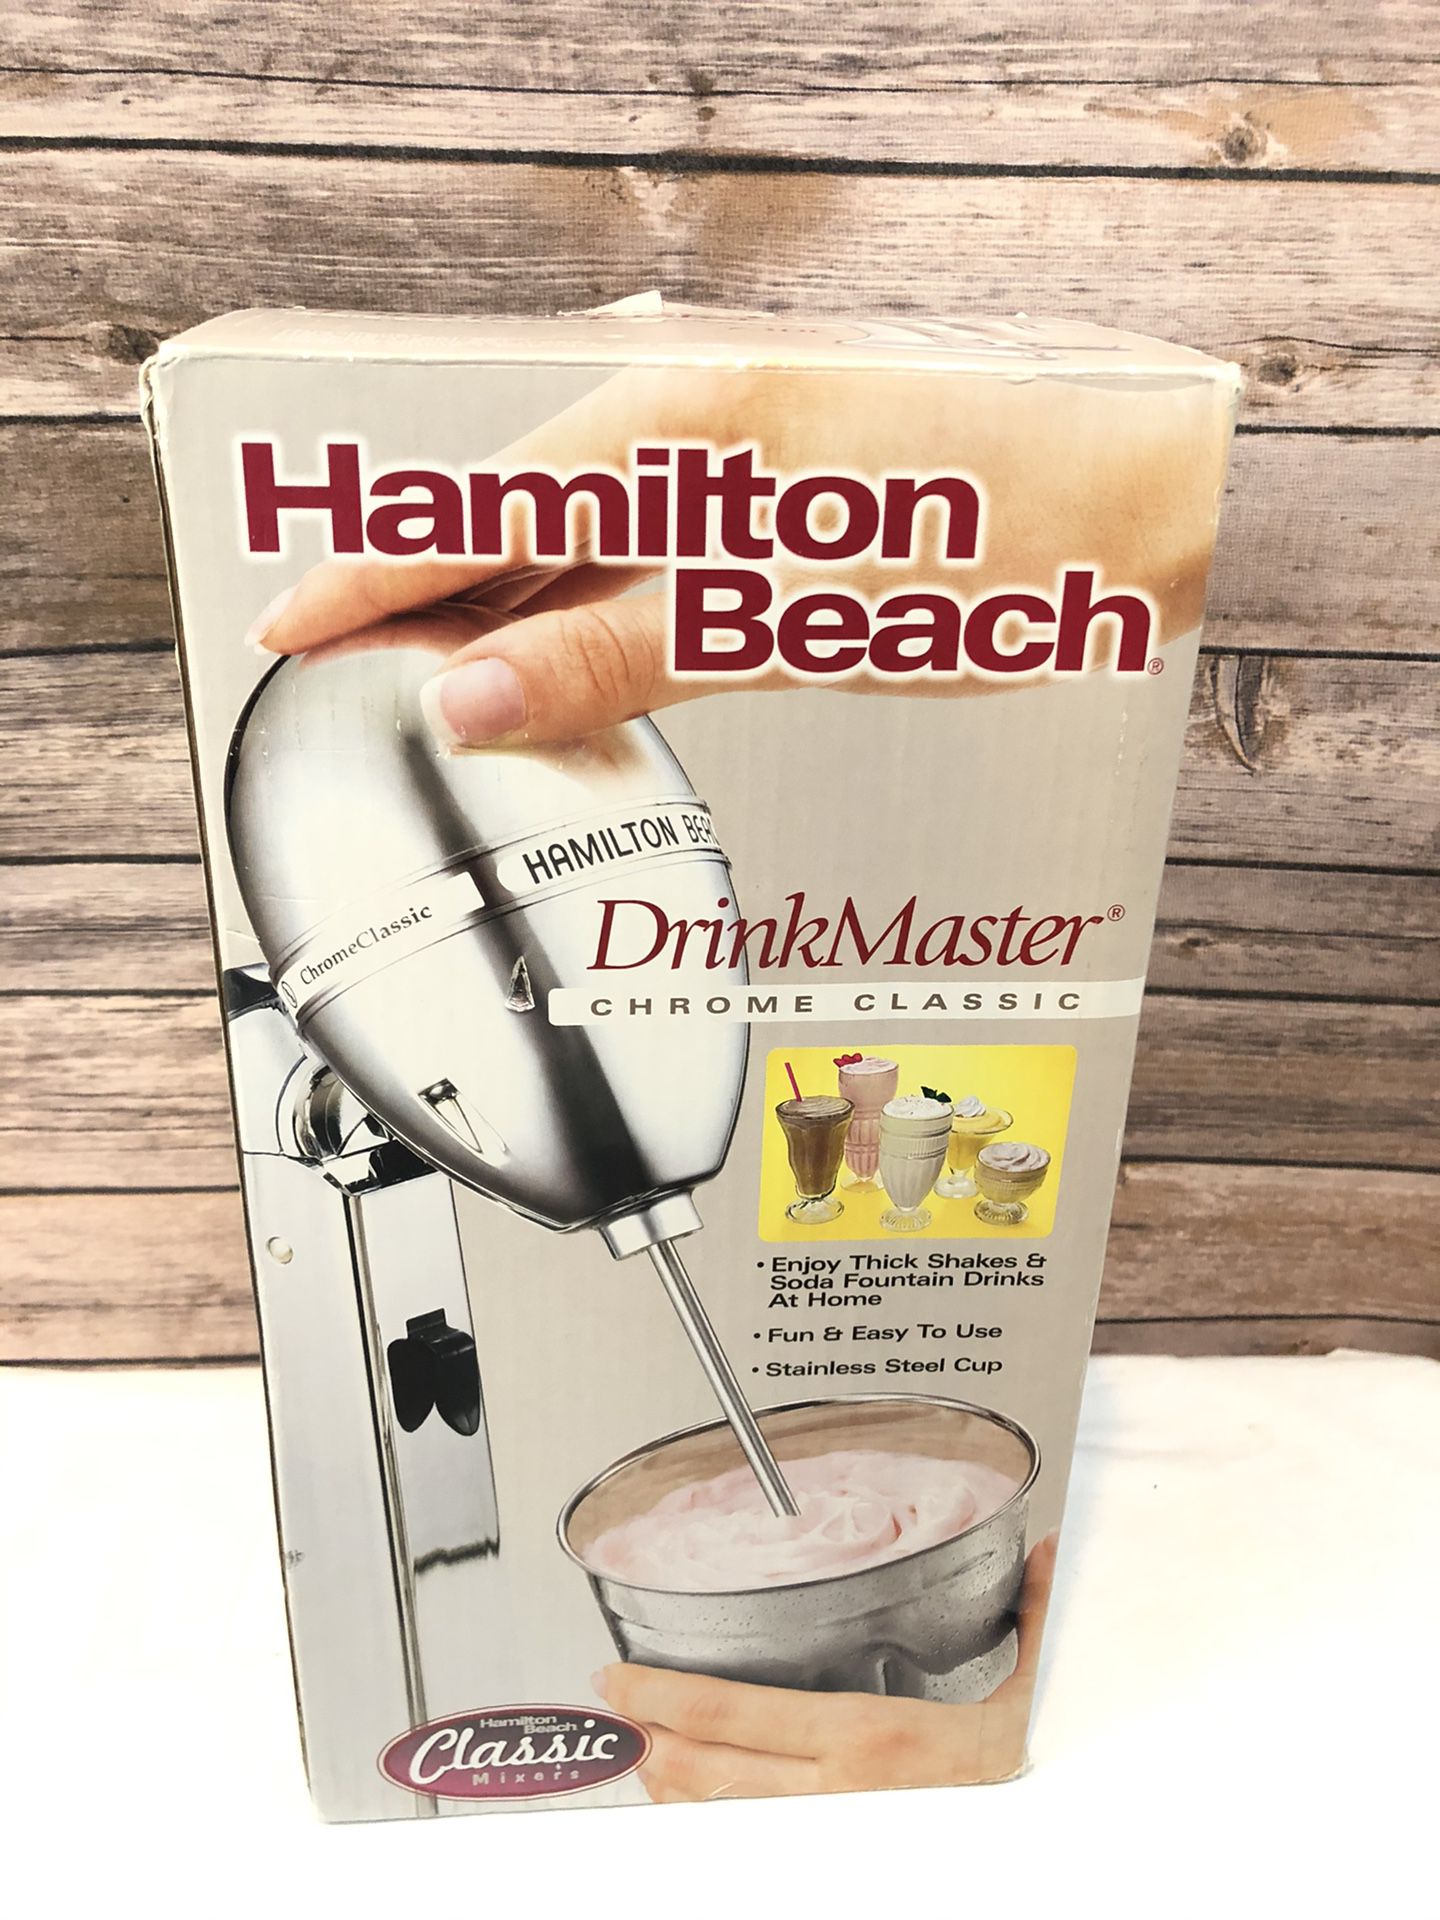 HAMILTON BEACH DrinkMaster Chrome Classic Model 730C Shakes Frozen Blender New